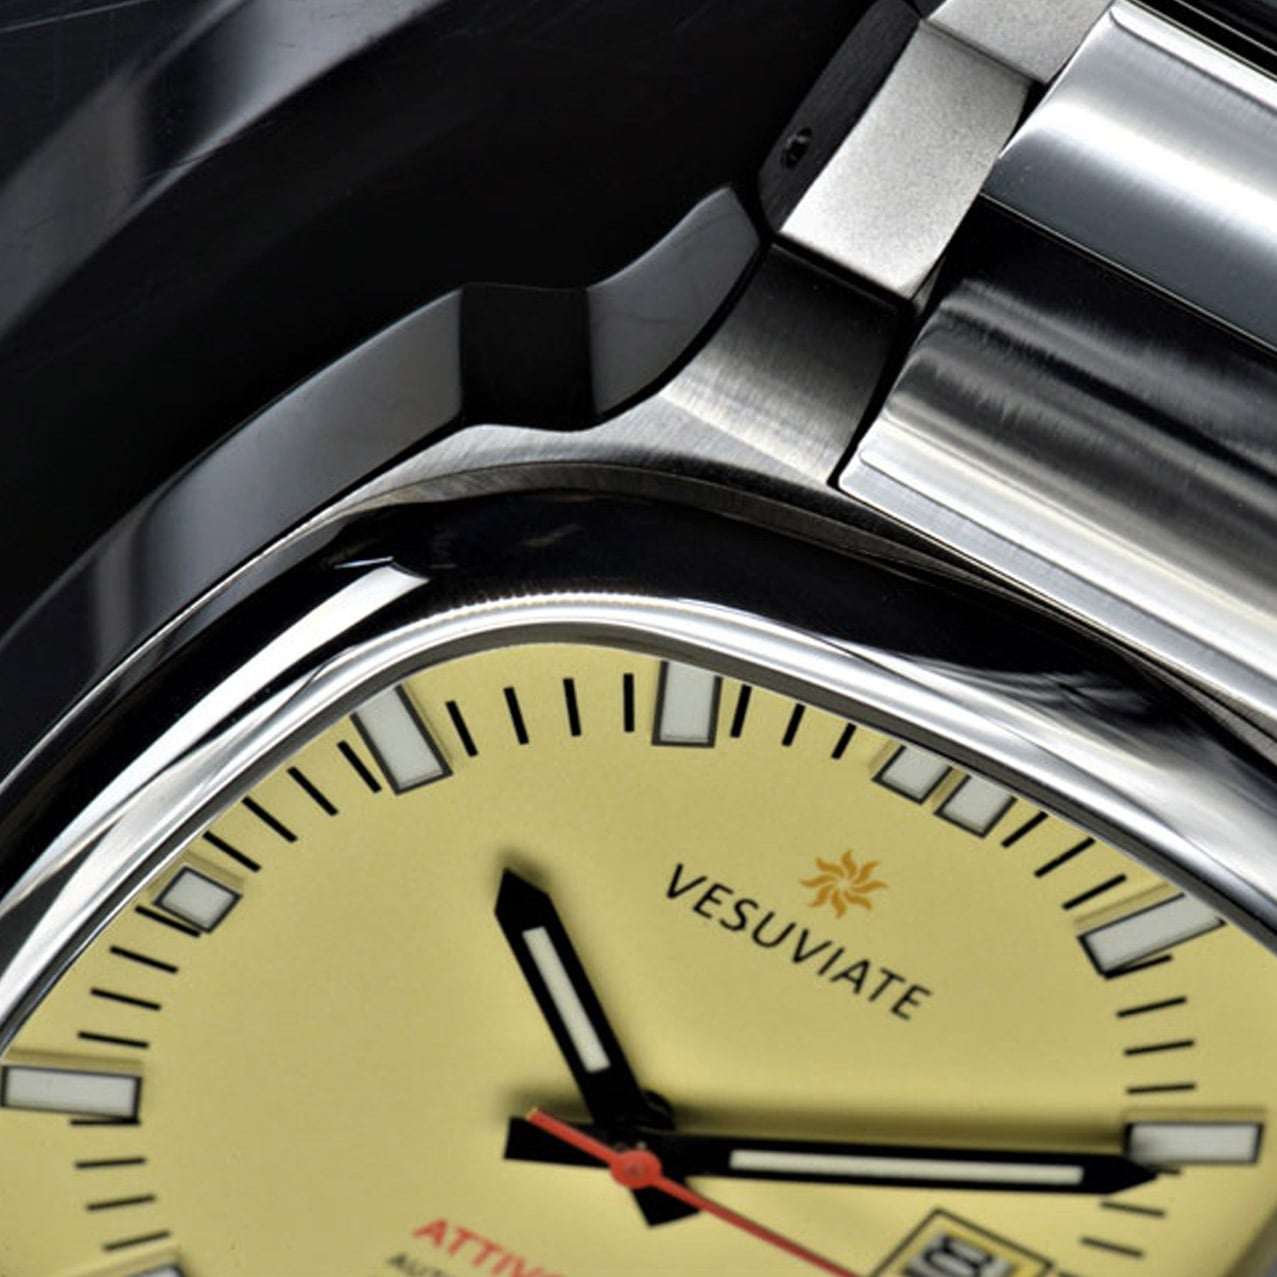 Vesuviate Watches-Attivo Cream White-close up-min